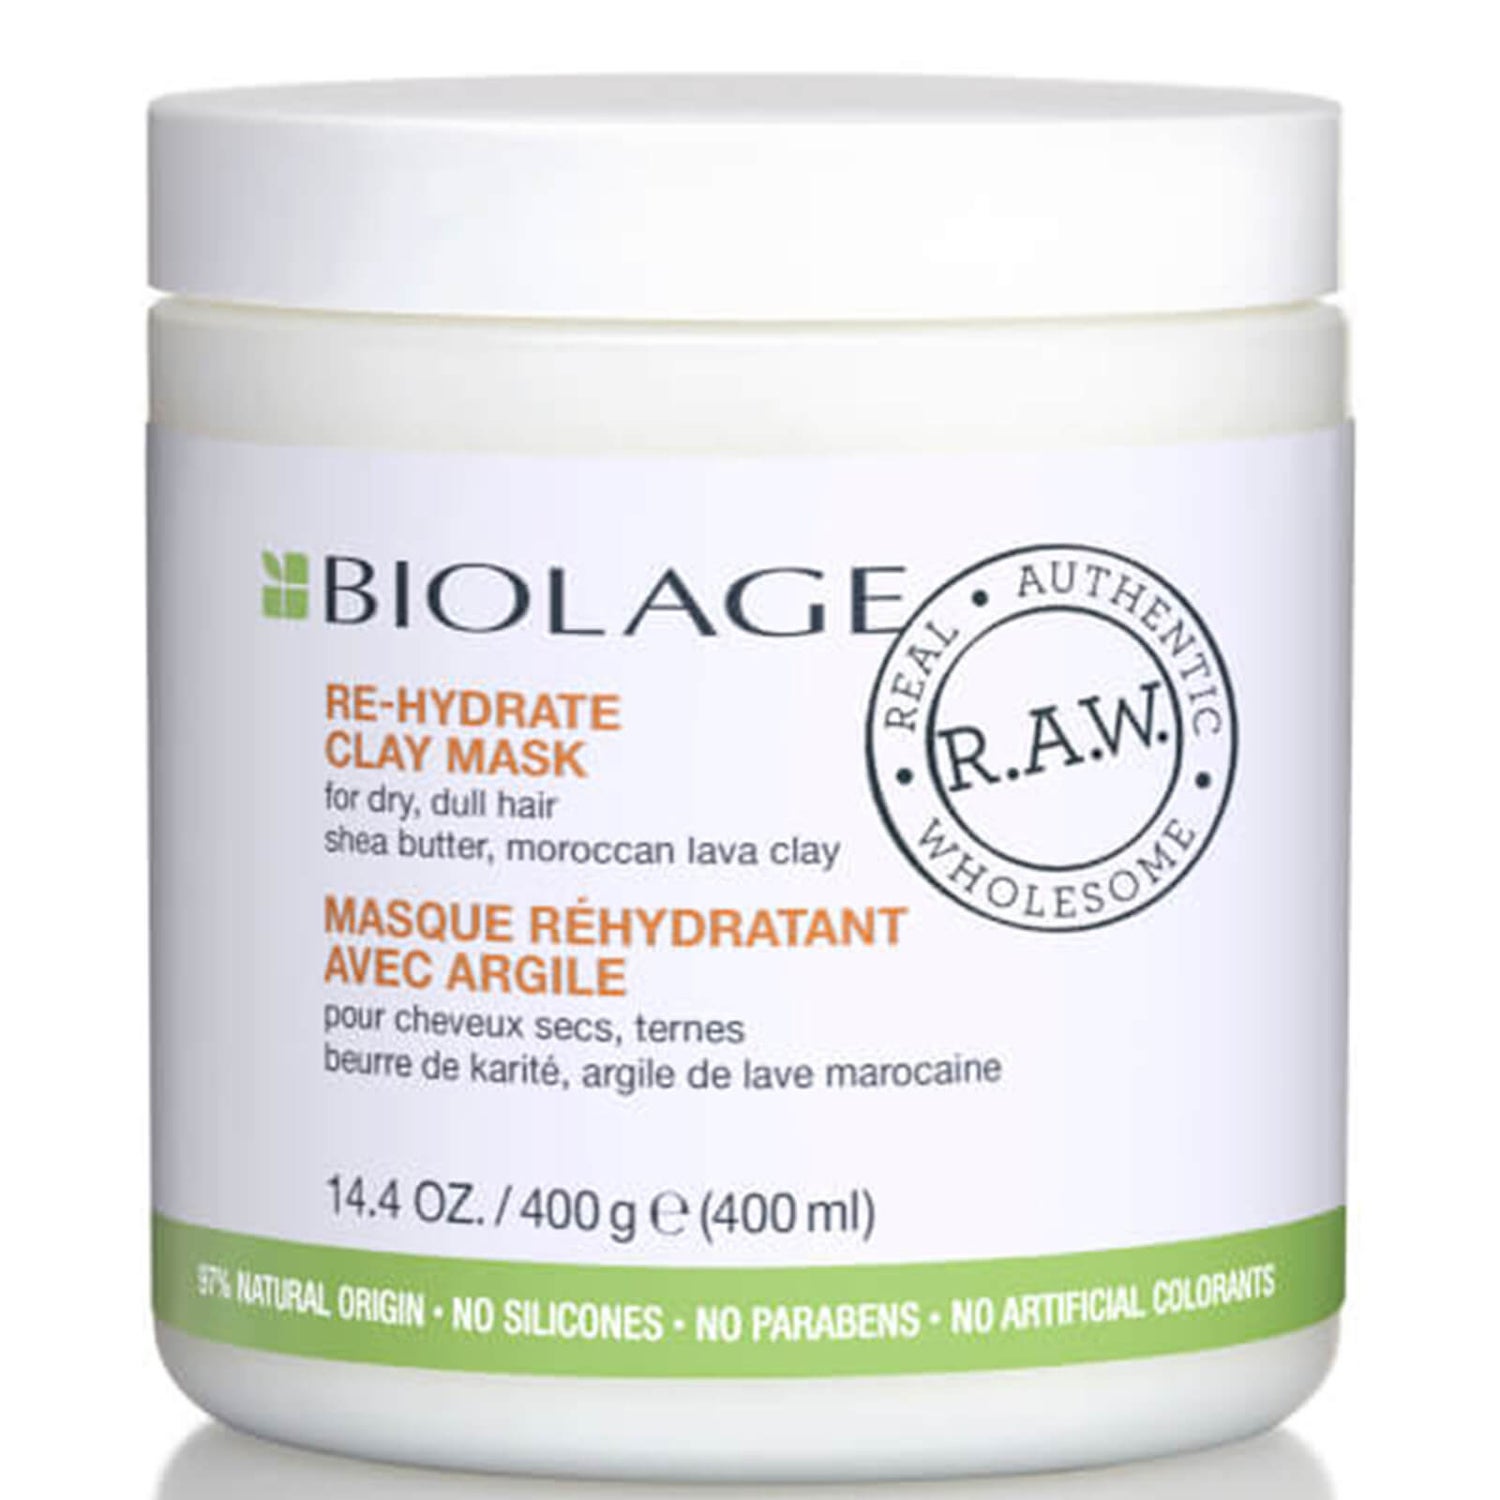 Biolage R.A.W. Re-Hydrate Mask 400ml